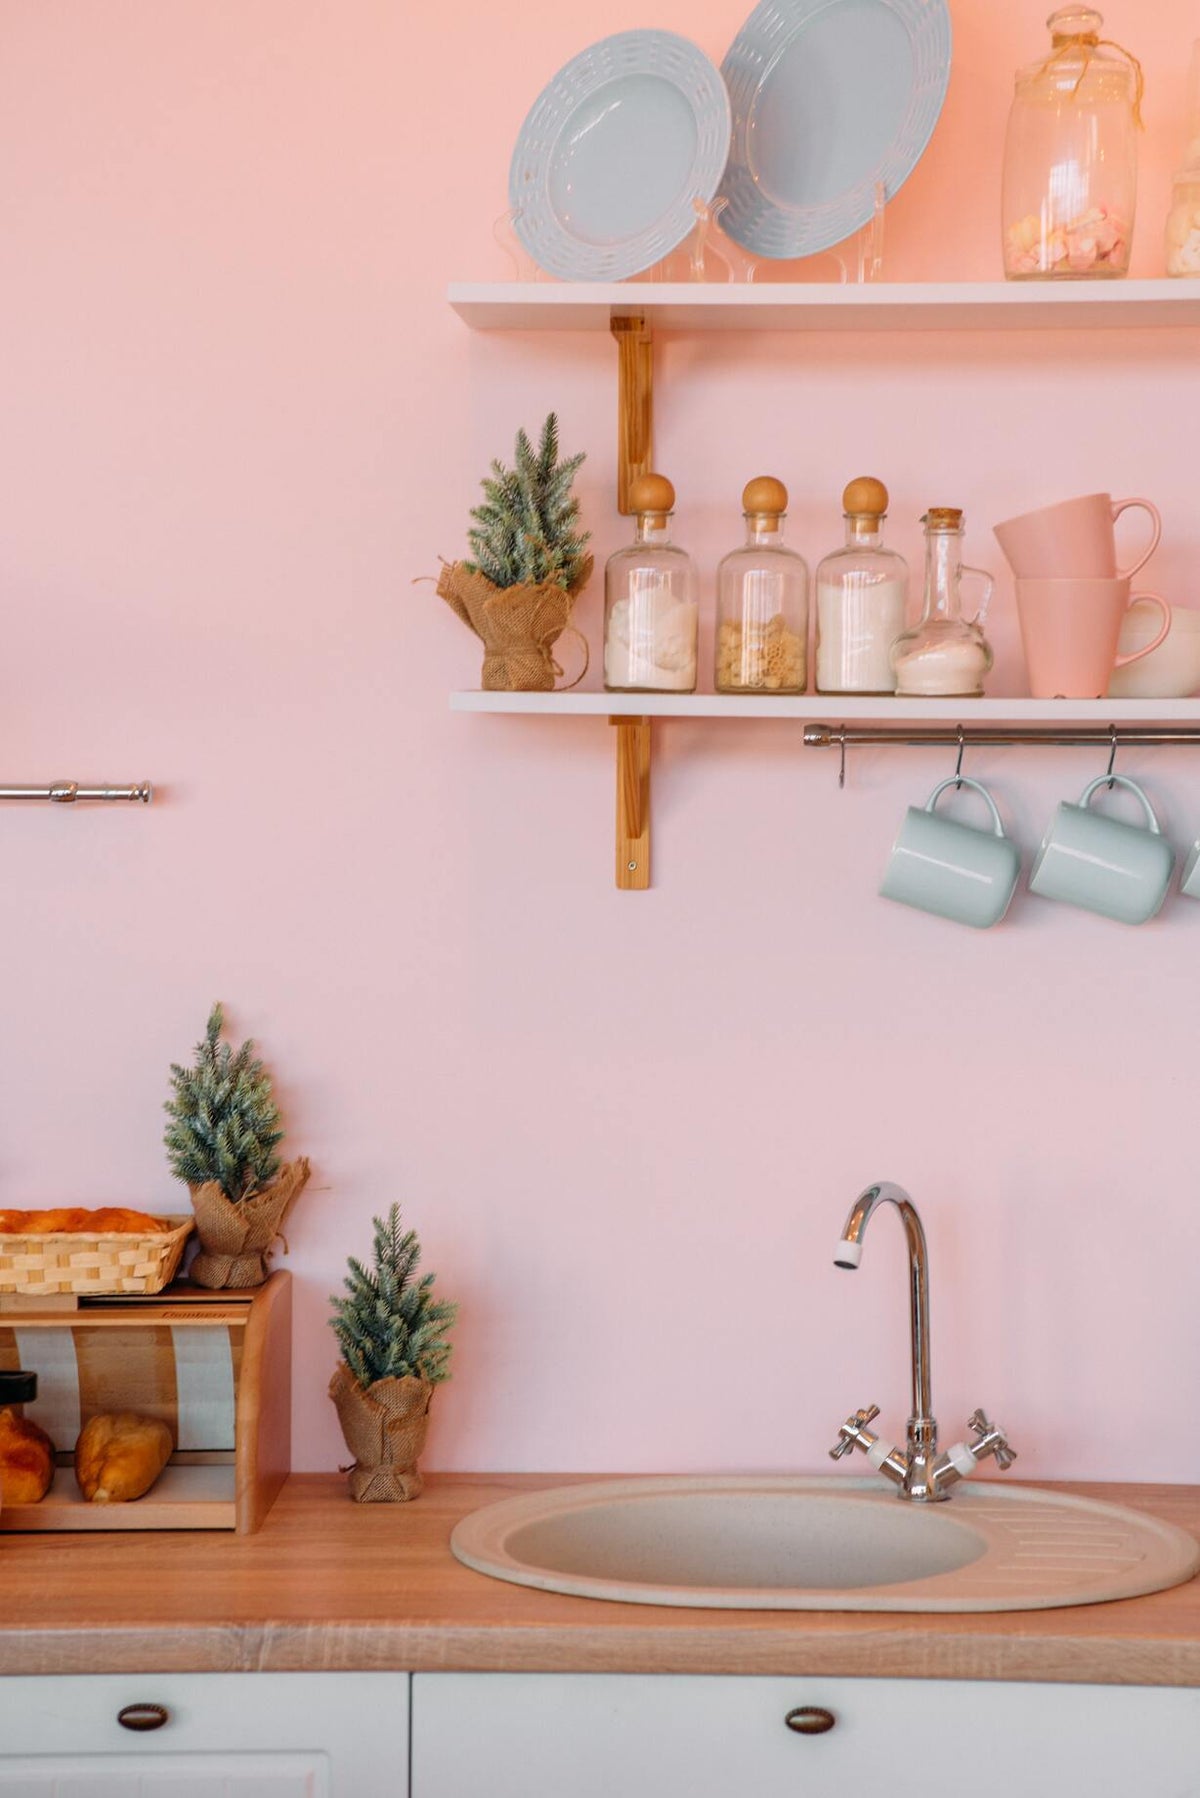 Rosa Pastellwand, davor eine hölzerne Kücheninsel  mit rundem lavabo, dahinter ein dezentes Wandregal mit Lebensmitteln in Glasbehältern und rosa Tassen, dazwischen kleine Pflanzen